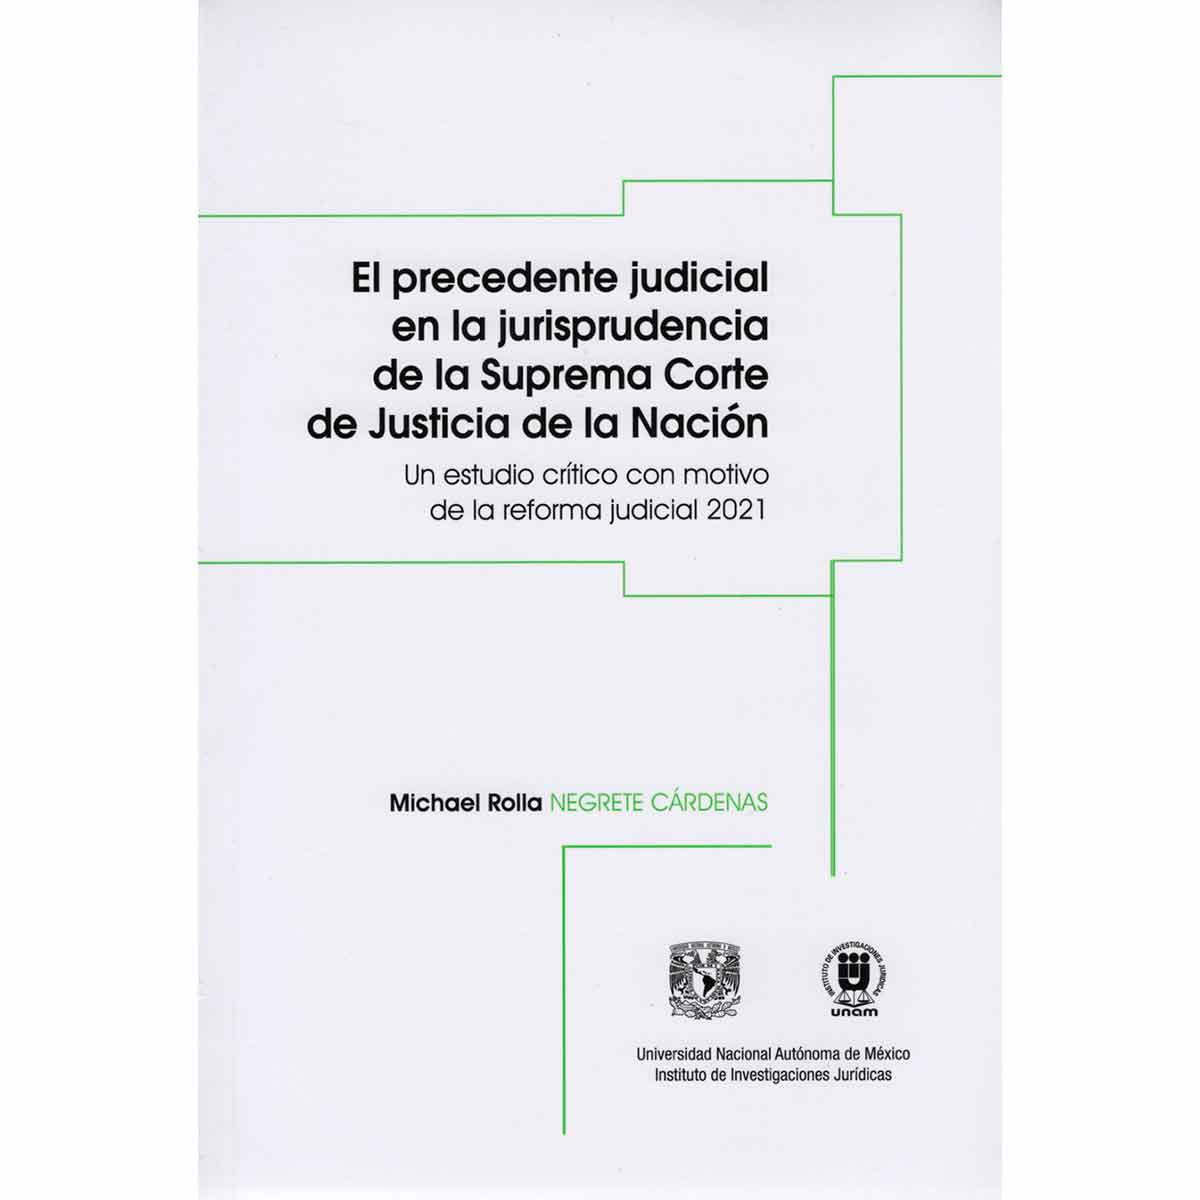 EL PRECEDENTE JUDICIAL EN LA JURISPRUDENCIA DE LA SUPREMA CORTE DE JUSTICIA DE LA NACIÓN. UN ESTUDIO CRÍTICO CON MOTIVO DE LA REFORMA JUDICIAL 2021